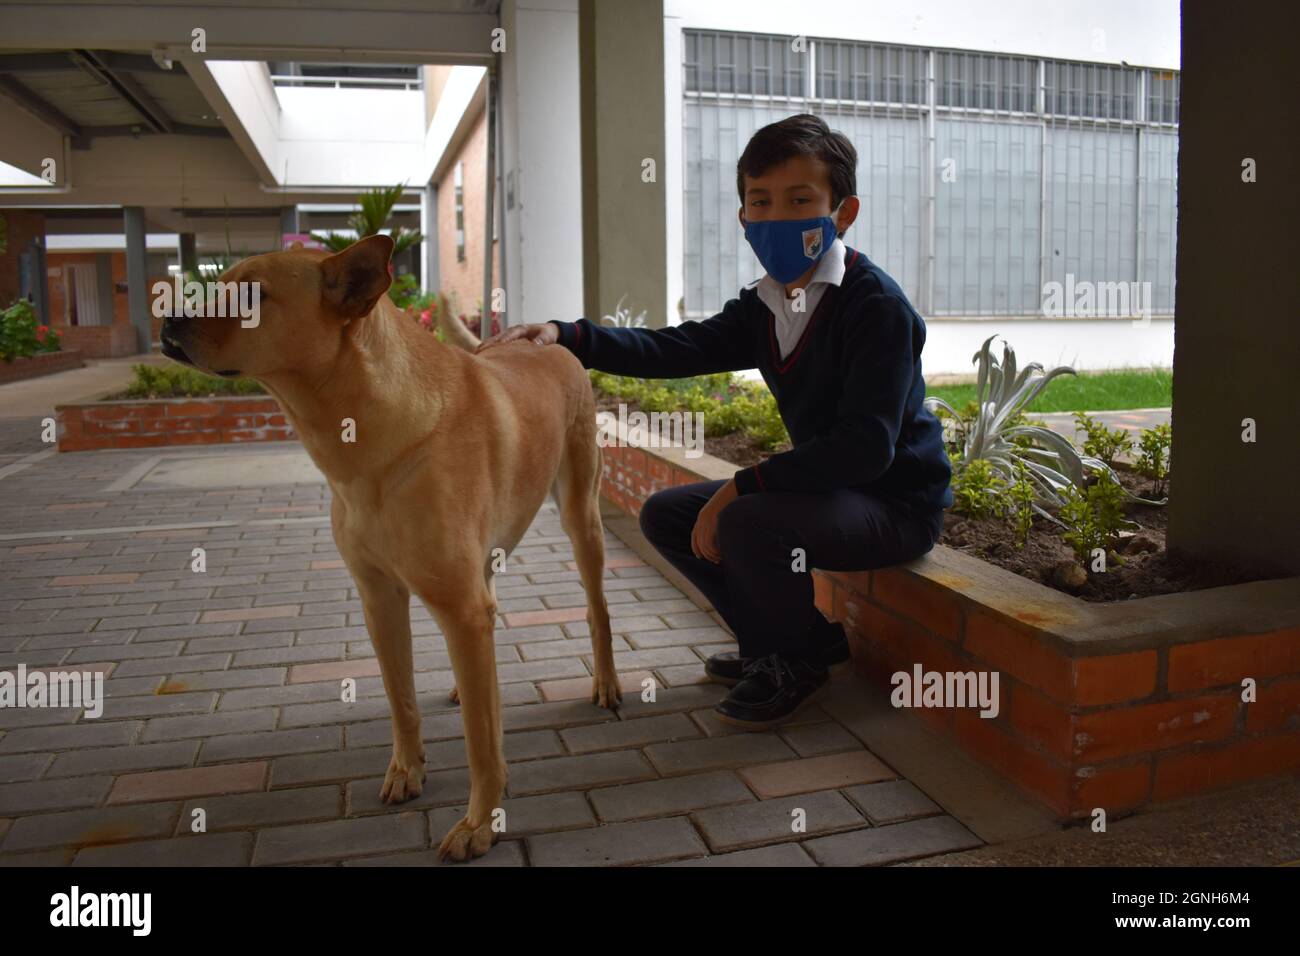 MOSQUERA, COLOMBIE - 31 août 2021: Un jeune étudiant avec un masque de sécurité assis sur la pierre avec son chien marron mignon Banque D'Images